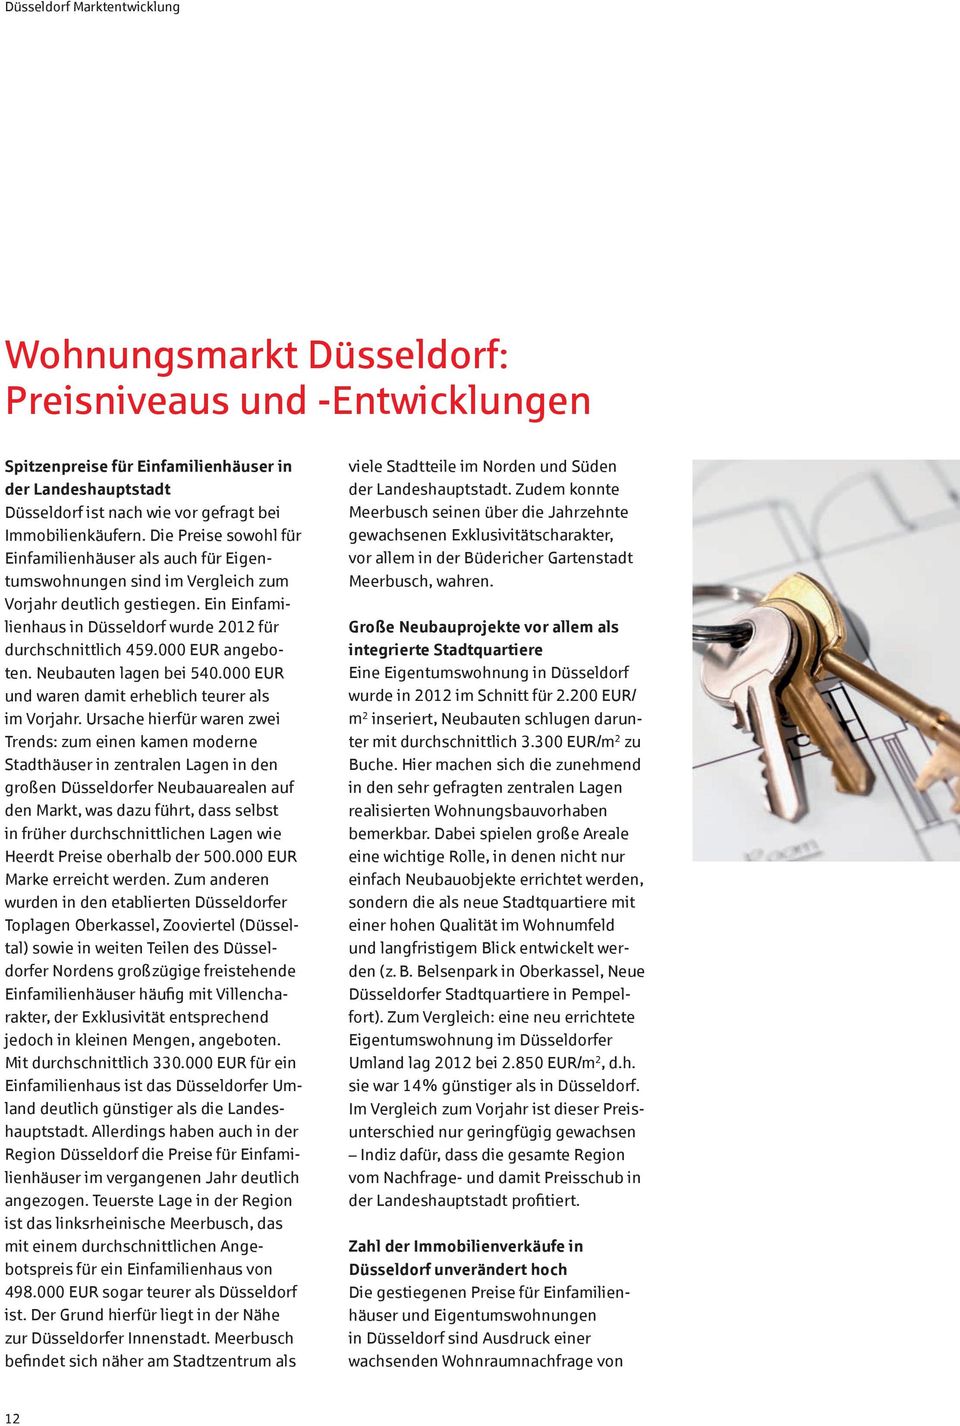 Ein Einfamilienhaus in Düsseldorf wurde 2012 für durchschnittlich 459.000 EUR angeboten. Neubauten lagen bei 540.000 EUR und waren damit erheblich teurer als im Vorjahr.